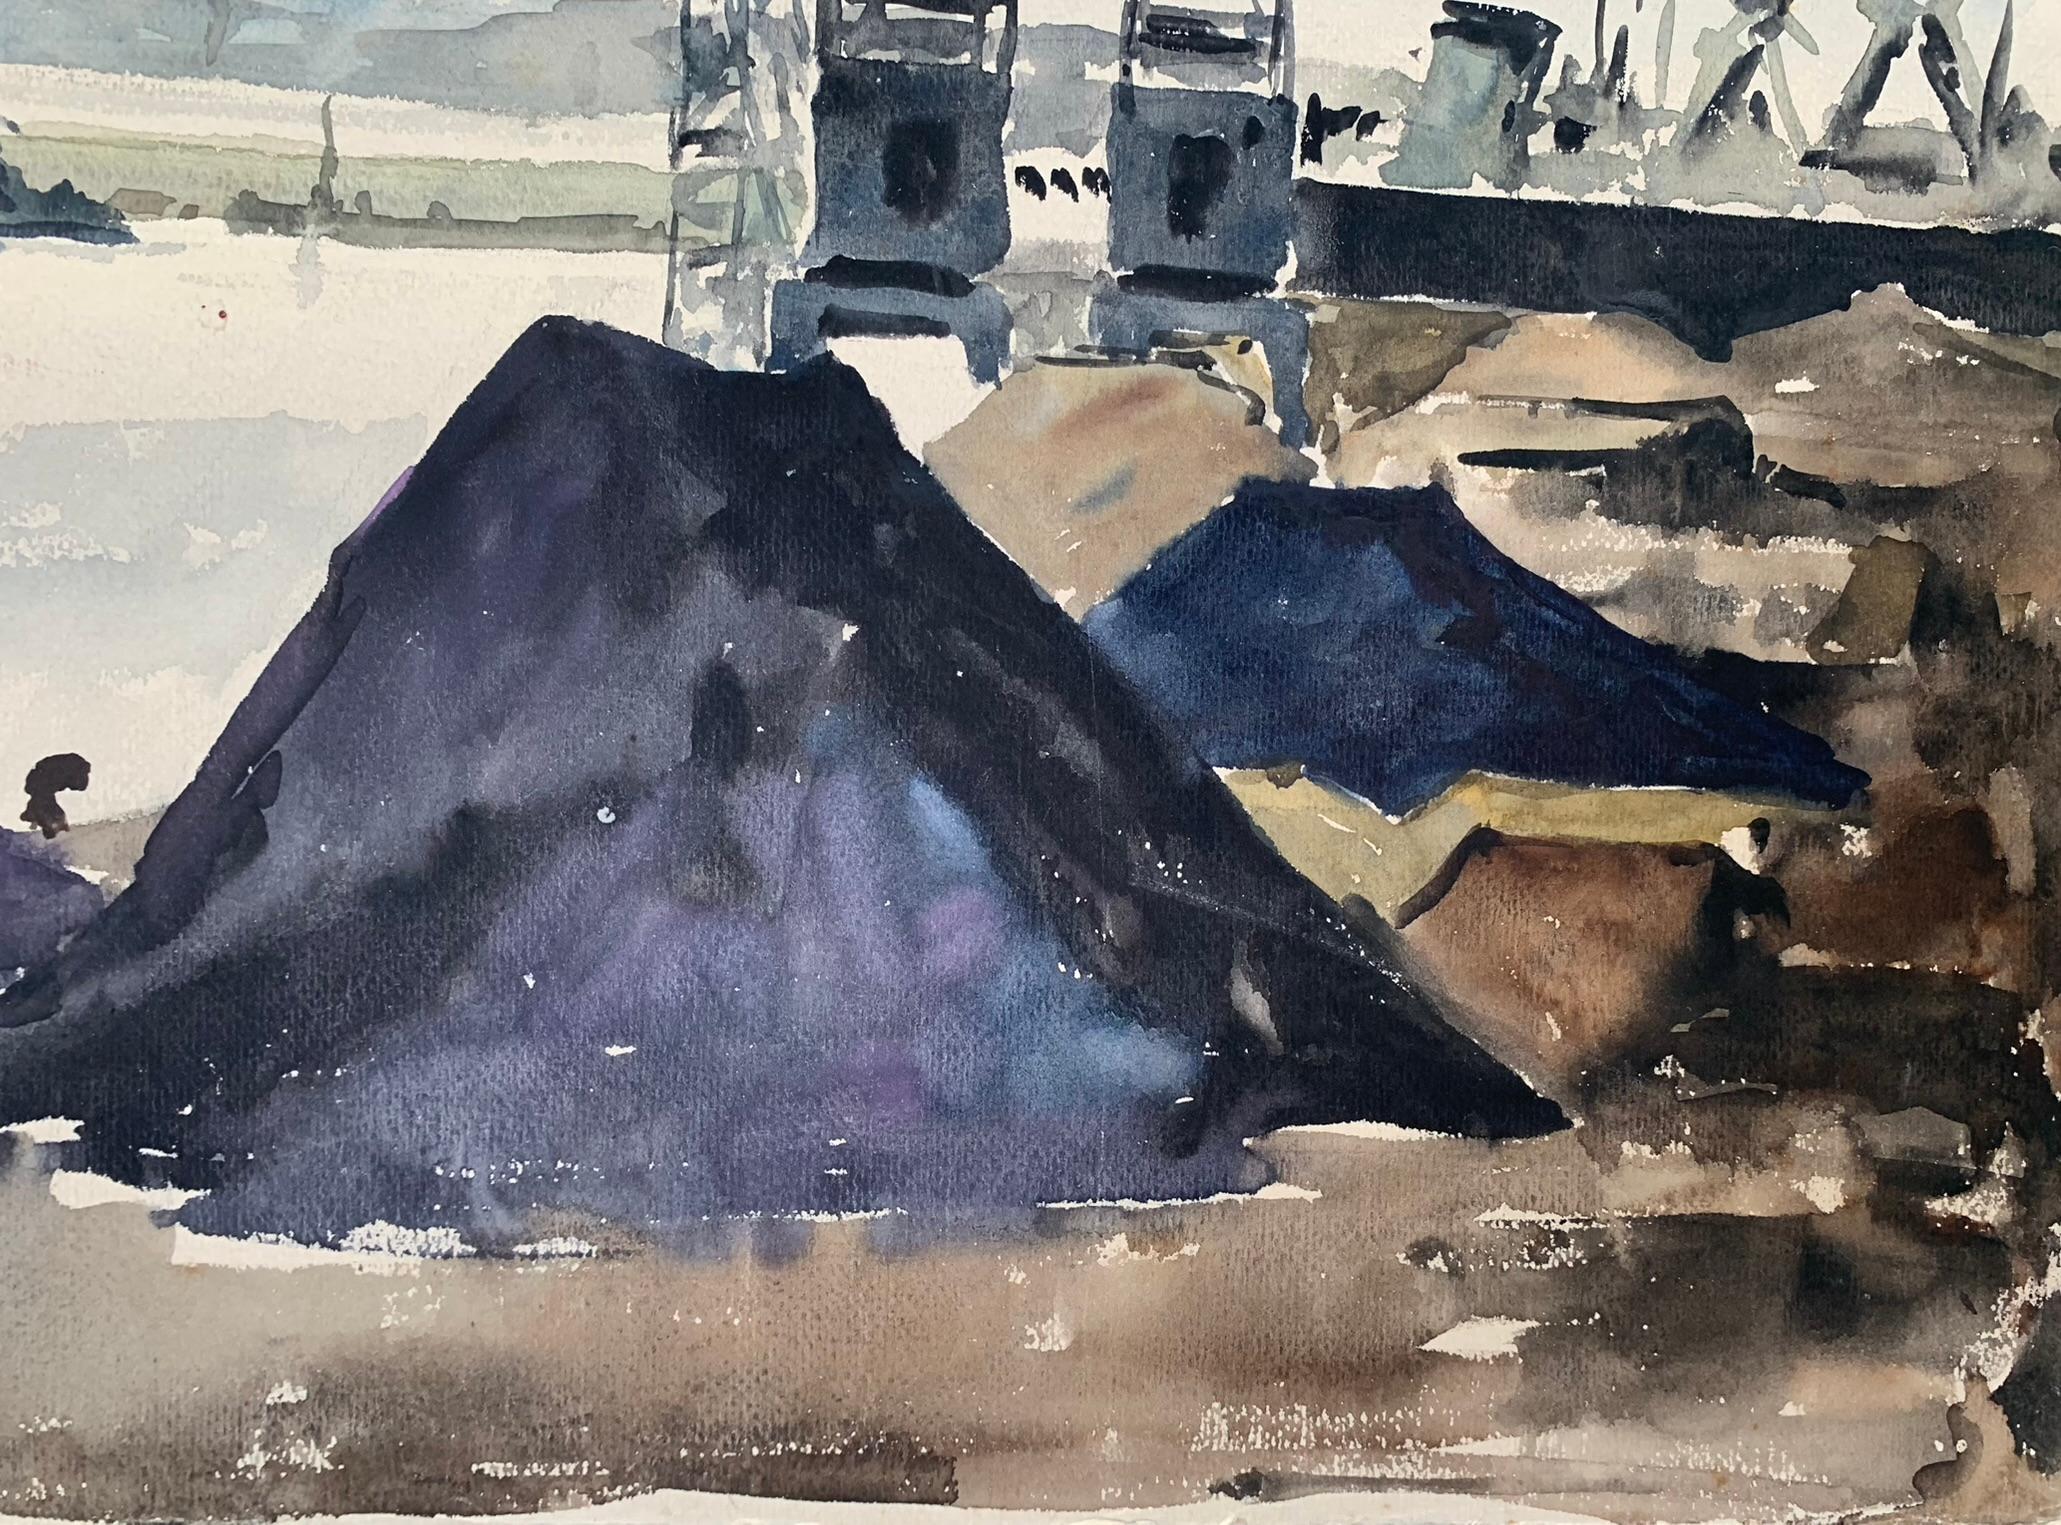 Le port de Terragon.
Aquarelle sur papier.
Vers 1940-1950.
Peint sur du papier aquarelle rugueux, Canson & Montgolfier, ancien fabricant français de papier.

La gamme chromatique est jouée dans les gris, les bleus indigo et les bruns. Ces couleurs